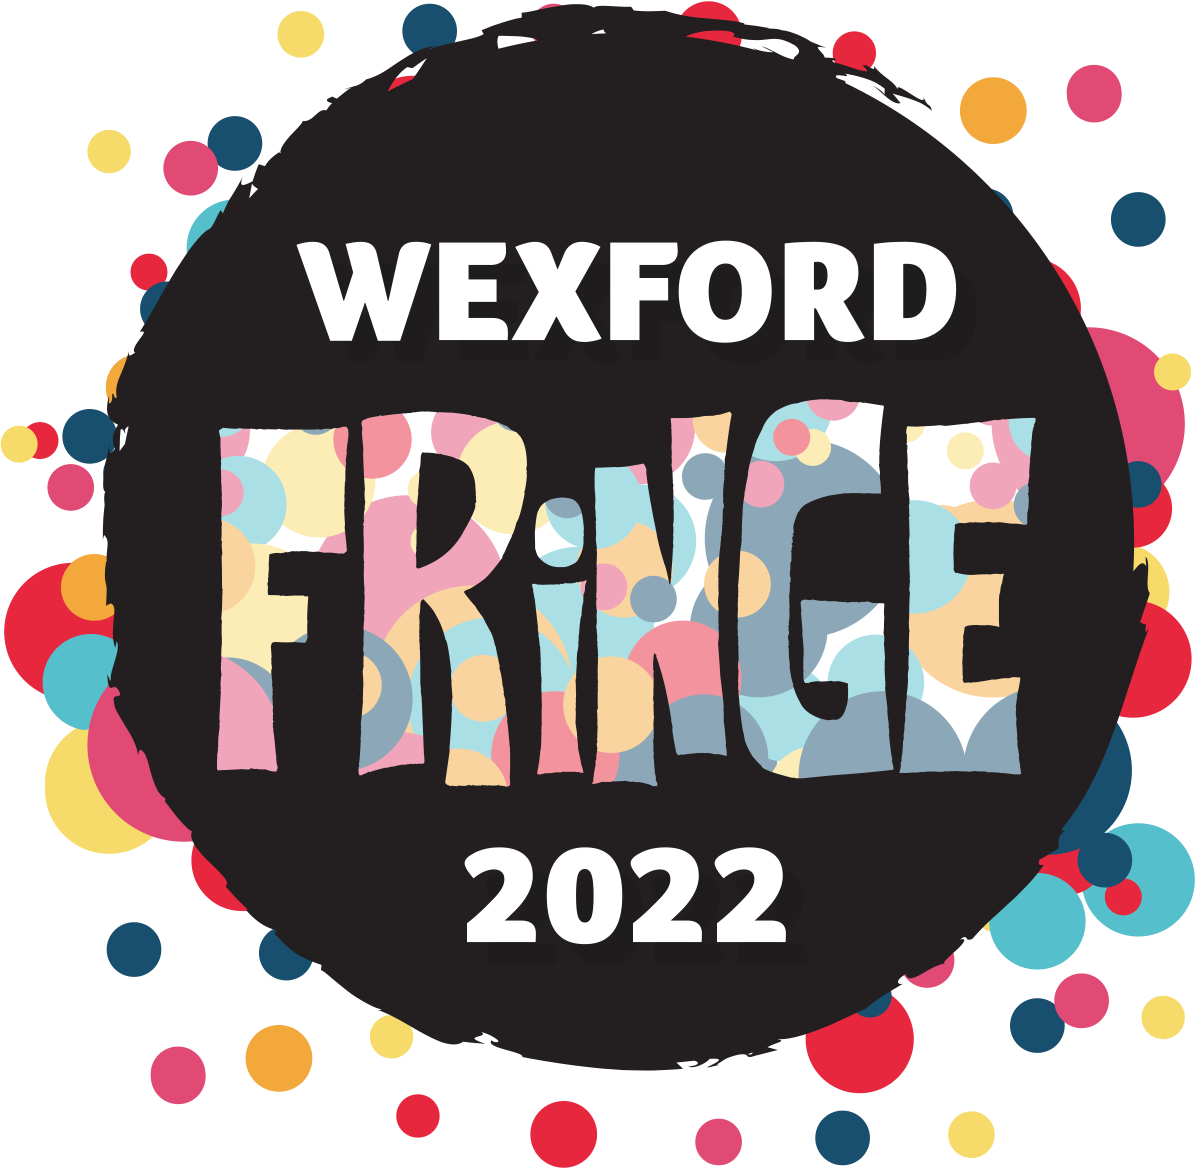 Wexford Fringe Festival 2022